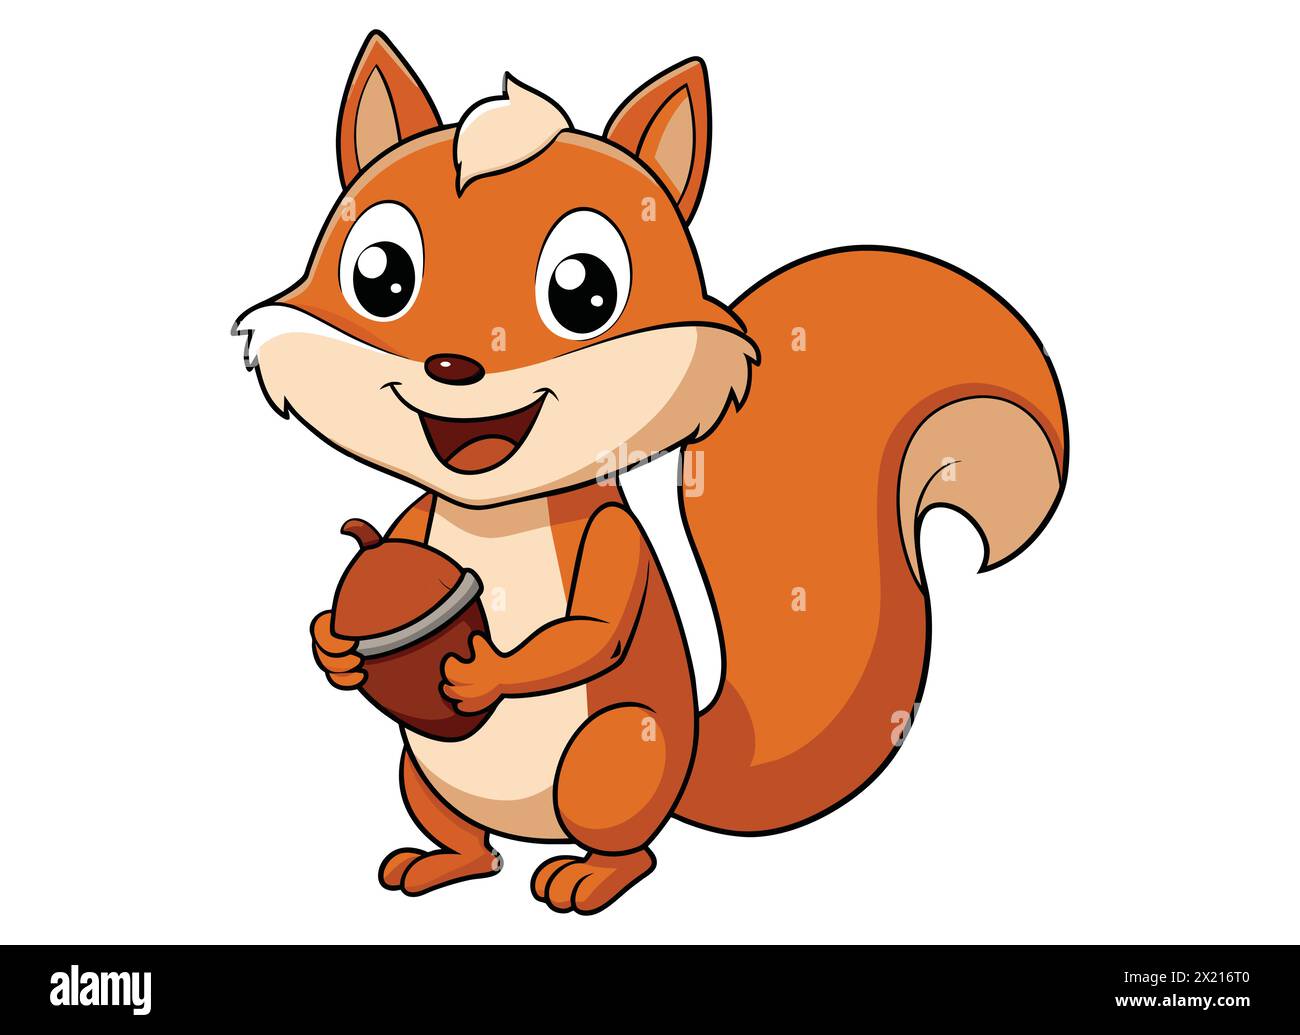 Fröhliches Eichhörnchen Mit Acorn. Verspielter Eichhörnchen-Cartoon. Niedlicher Eichhörnchen-Charakter mit Mutter Stock Vektor